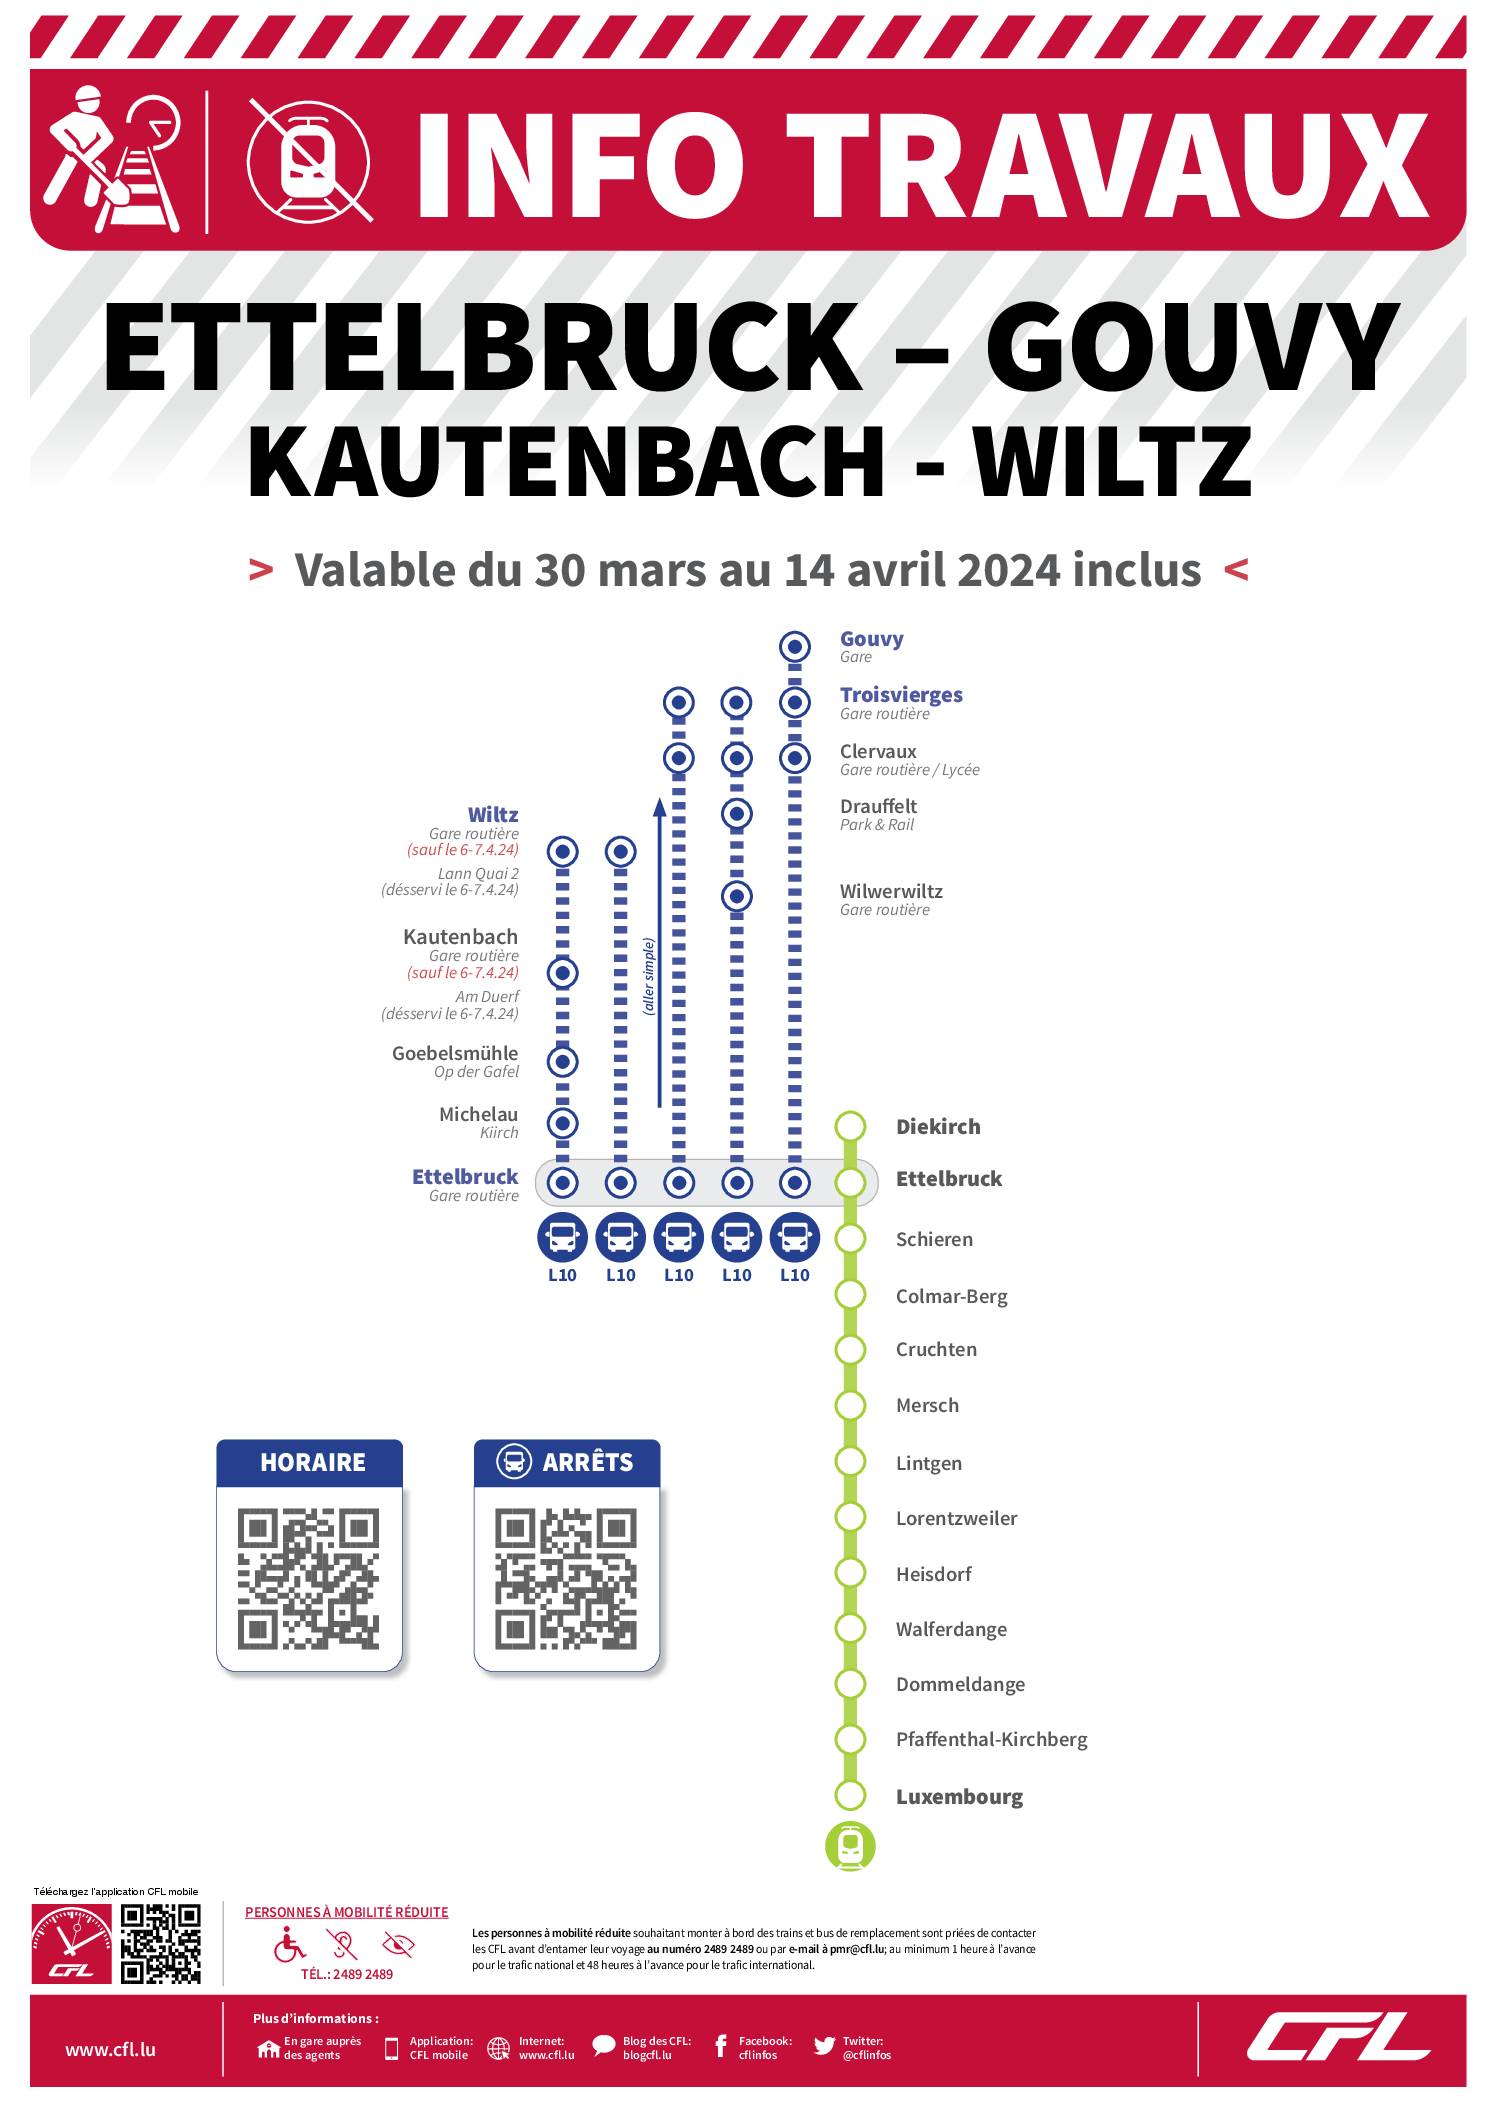 Info CFL - Travaux sur la ligne Ettelbruck-Gouvy et Kautenbach - Wiltz du 30 mars au 14 avril 2024